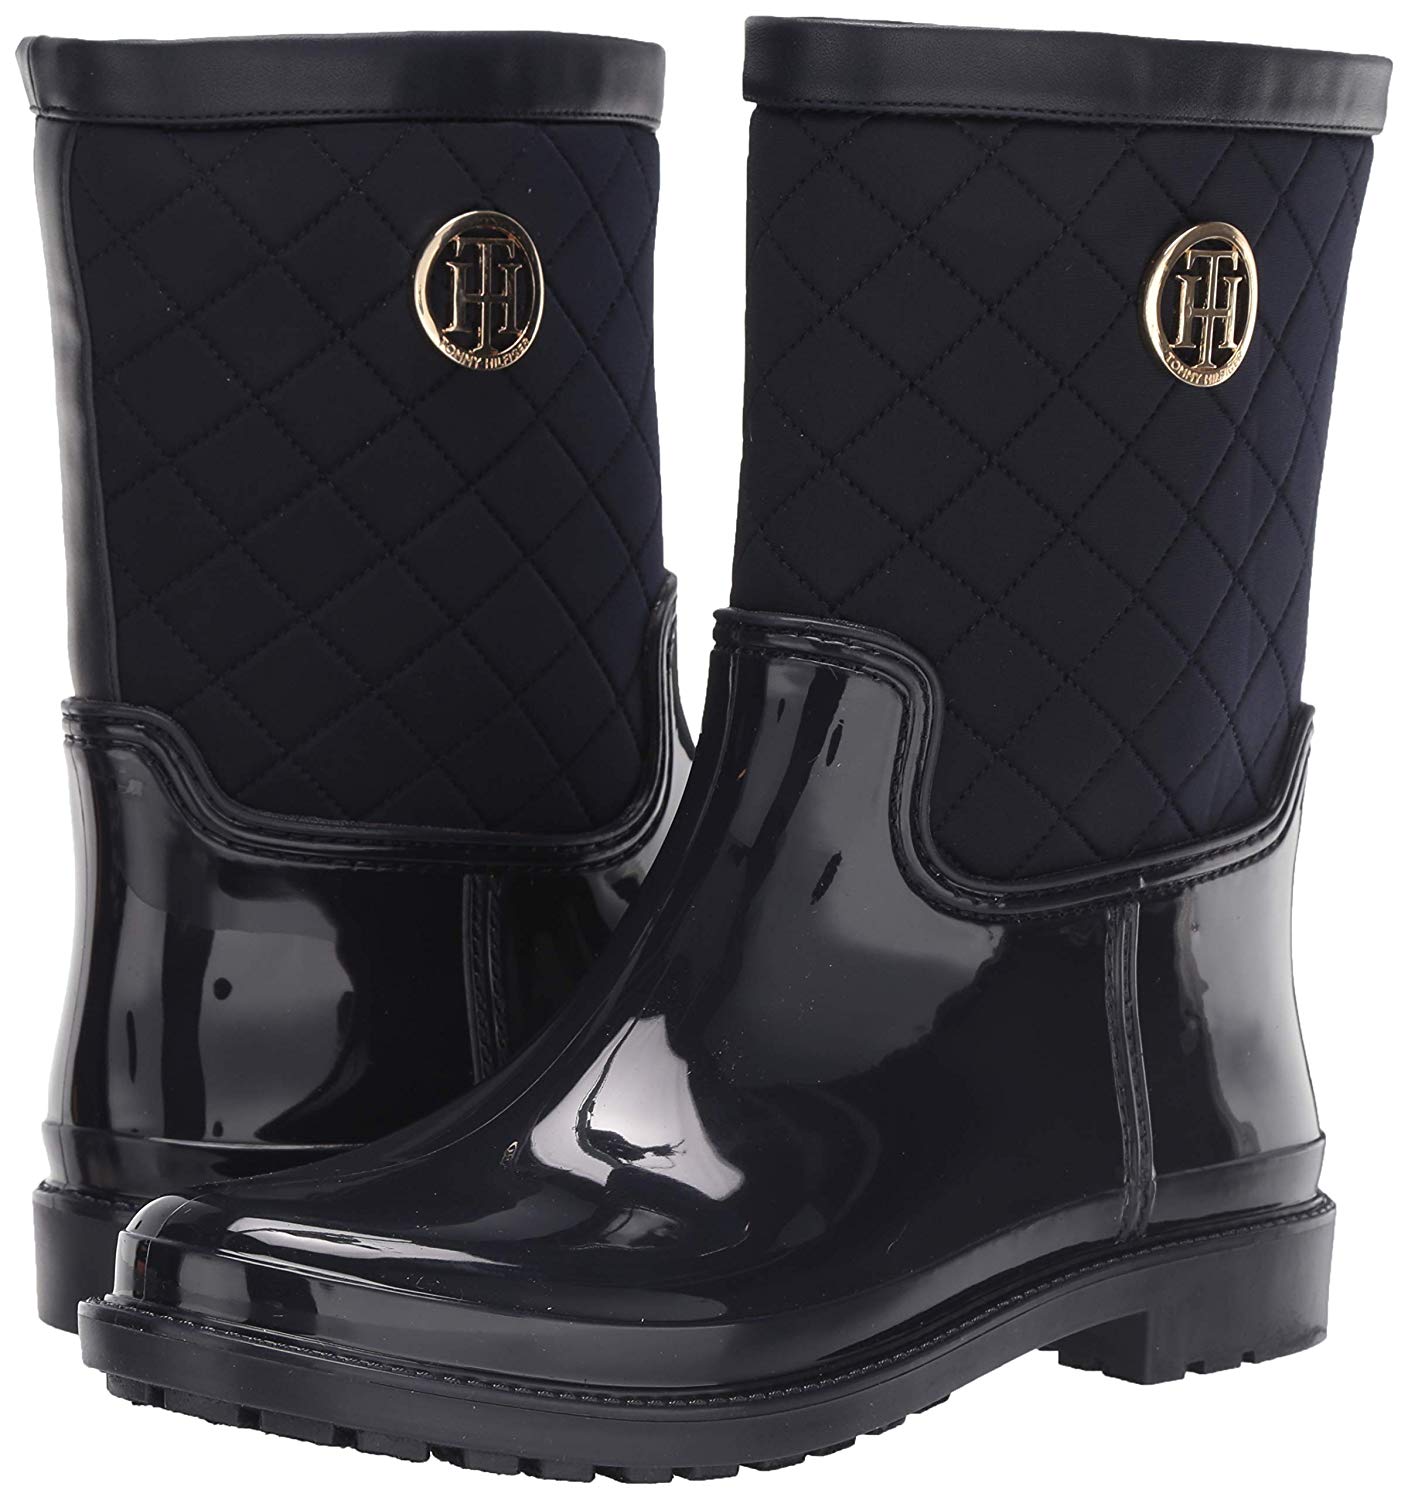 Tommy Hilfiger Women's Splash Rain Boot, Navy, Size 9.0 9I9L | eBay